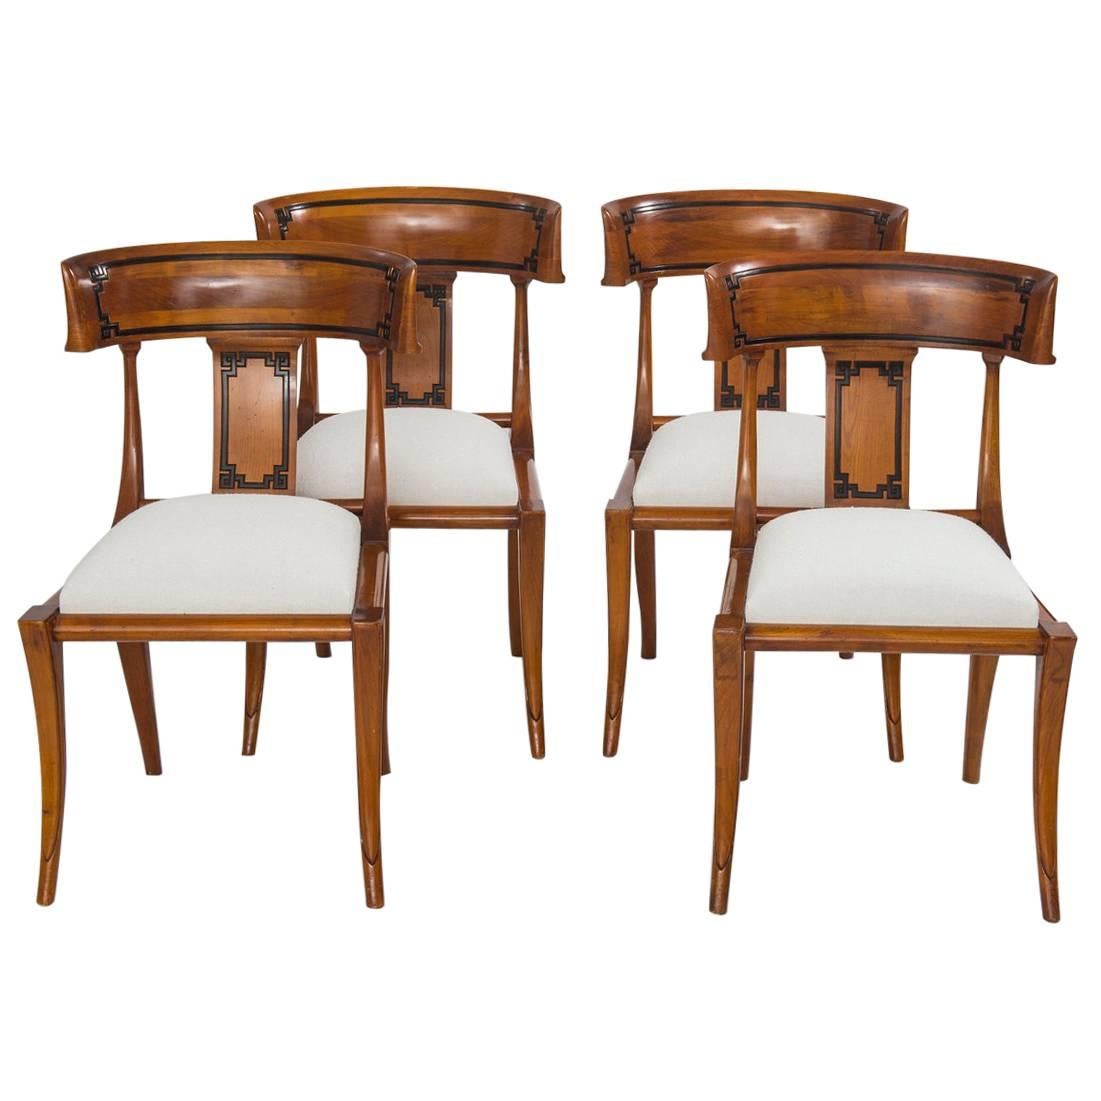 Set of Four Empire Style Cherry Wood Klismos Chair